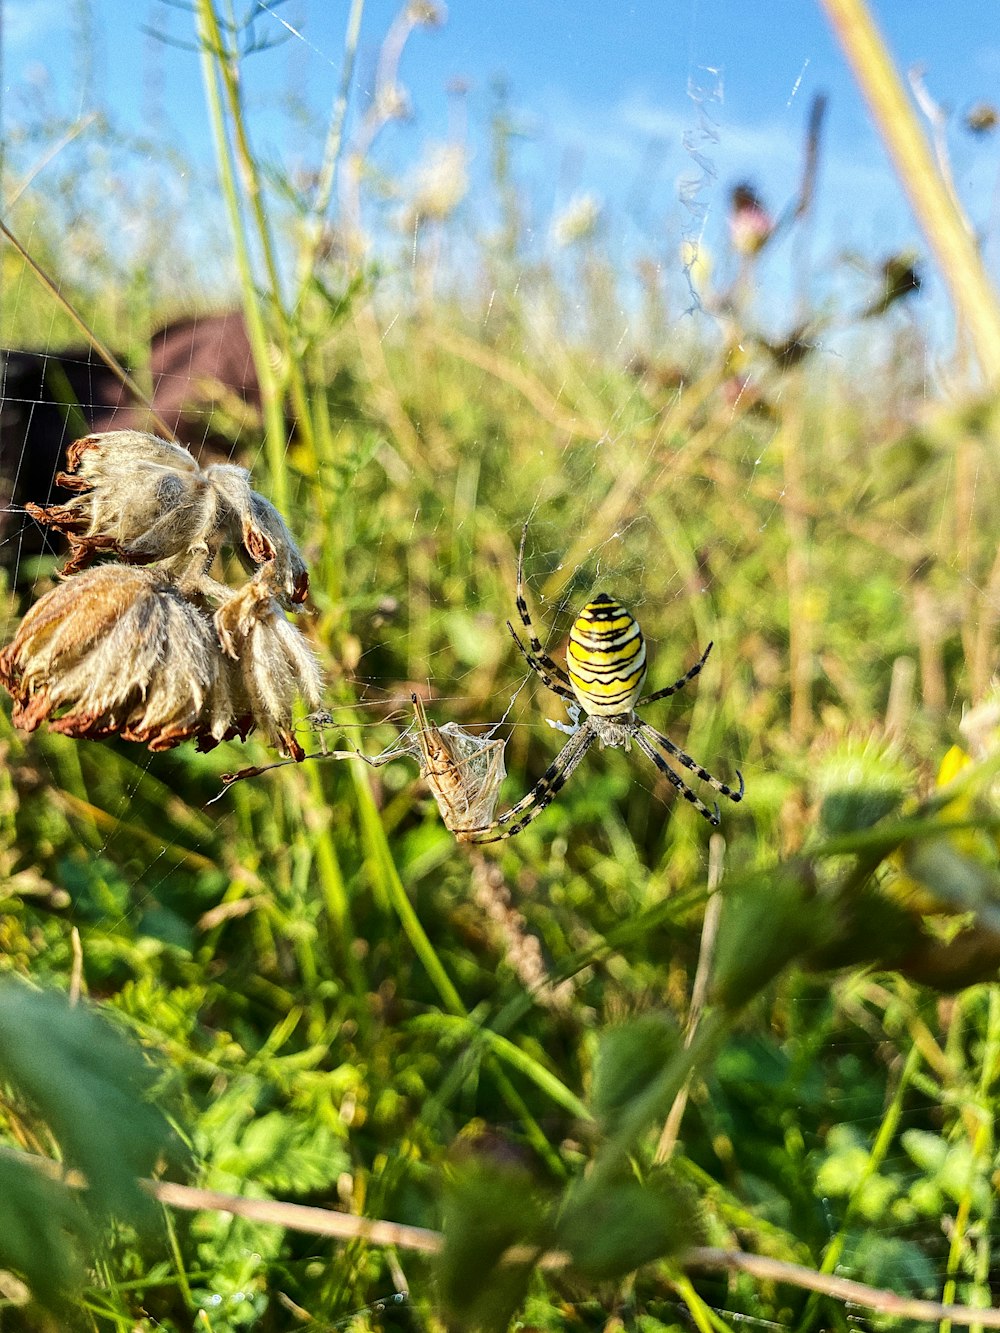 araignée tigrée jaune et noire sur une plante verte pendant la journée